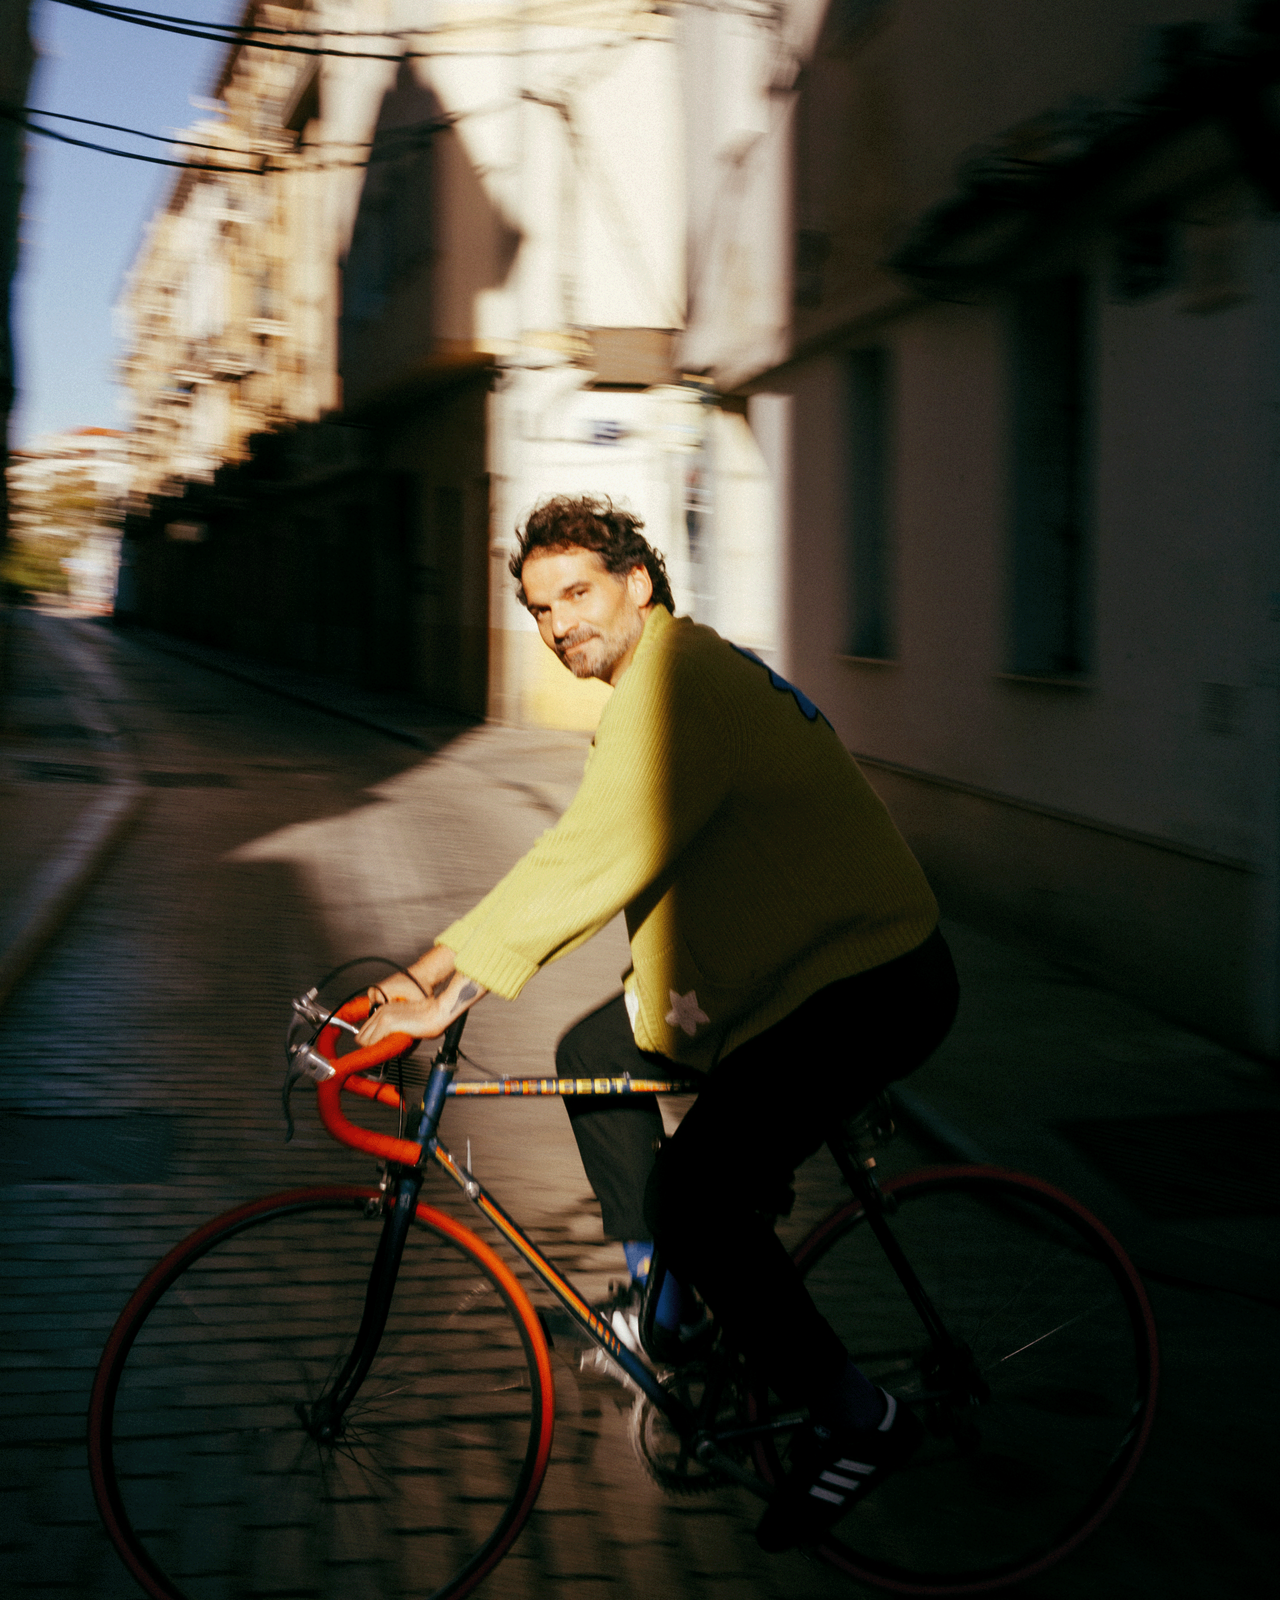 Unscharfes Bild von Jaime Hayon auf Fahrrad